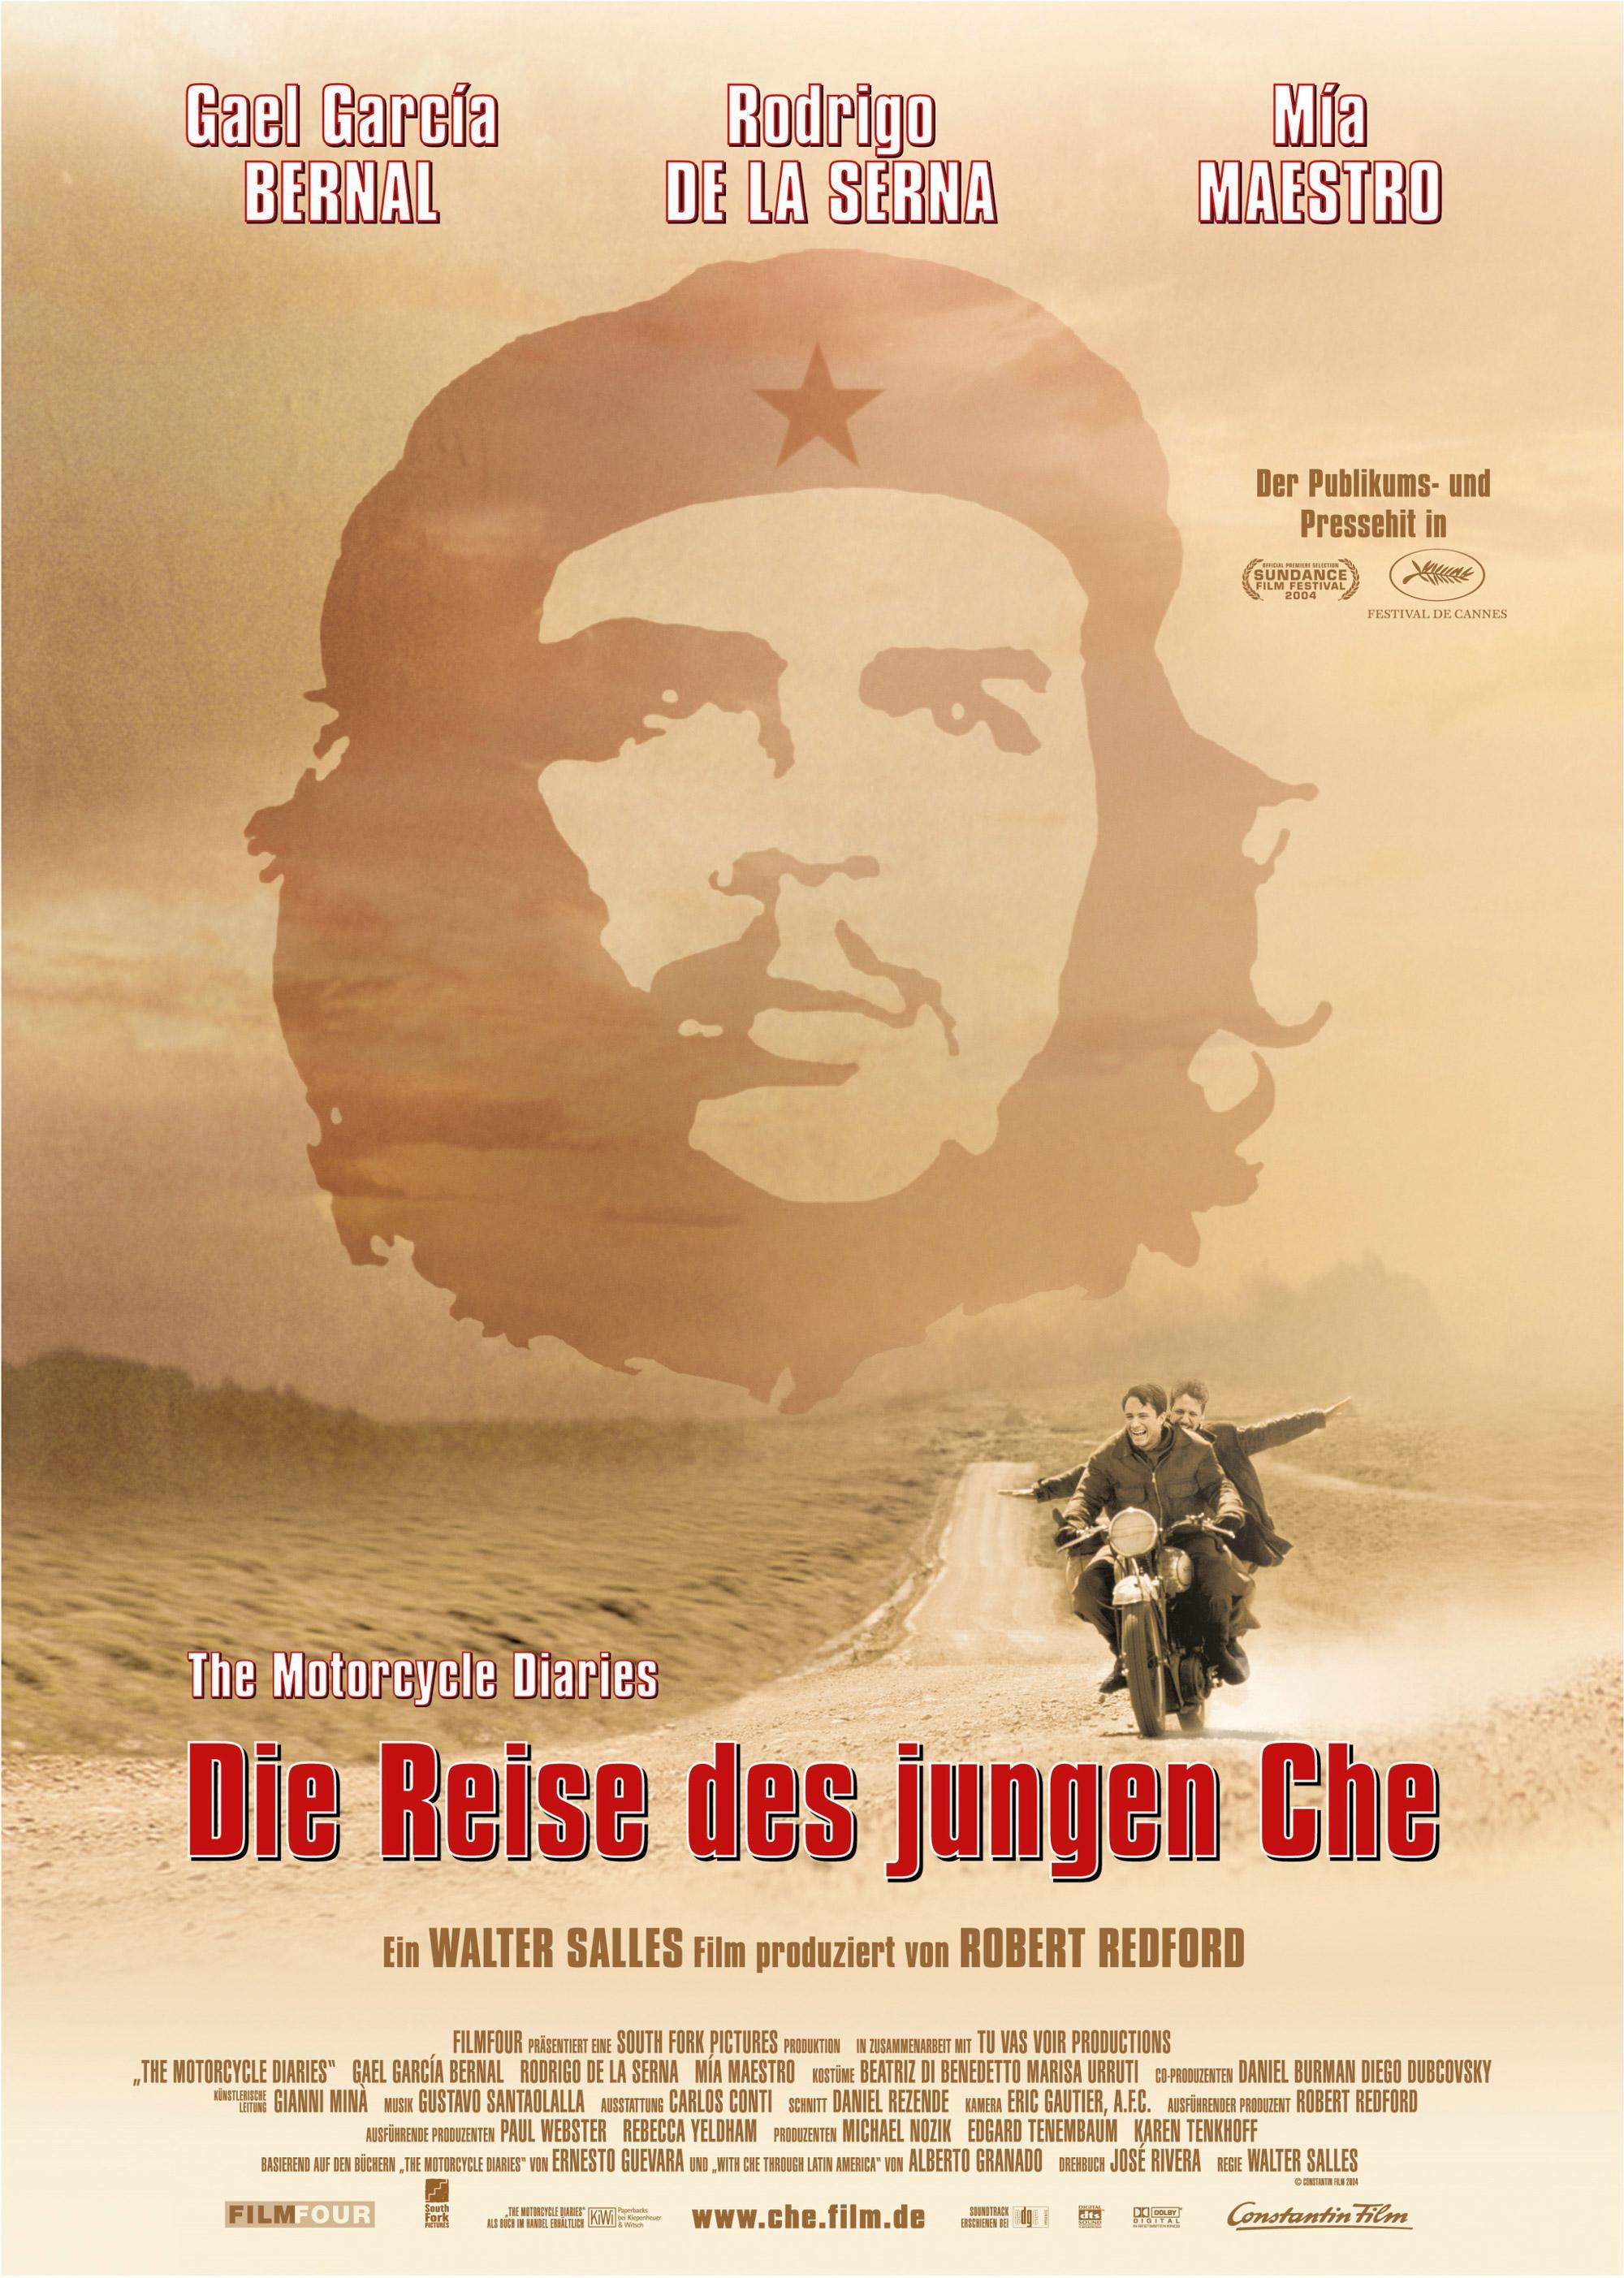 Постер - Че Гевара: Дневники мотоциклиста: 2000x2805 / 434.79 Кб